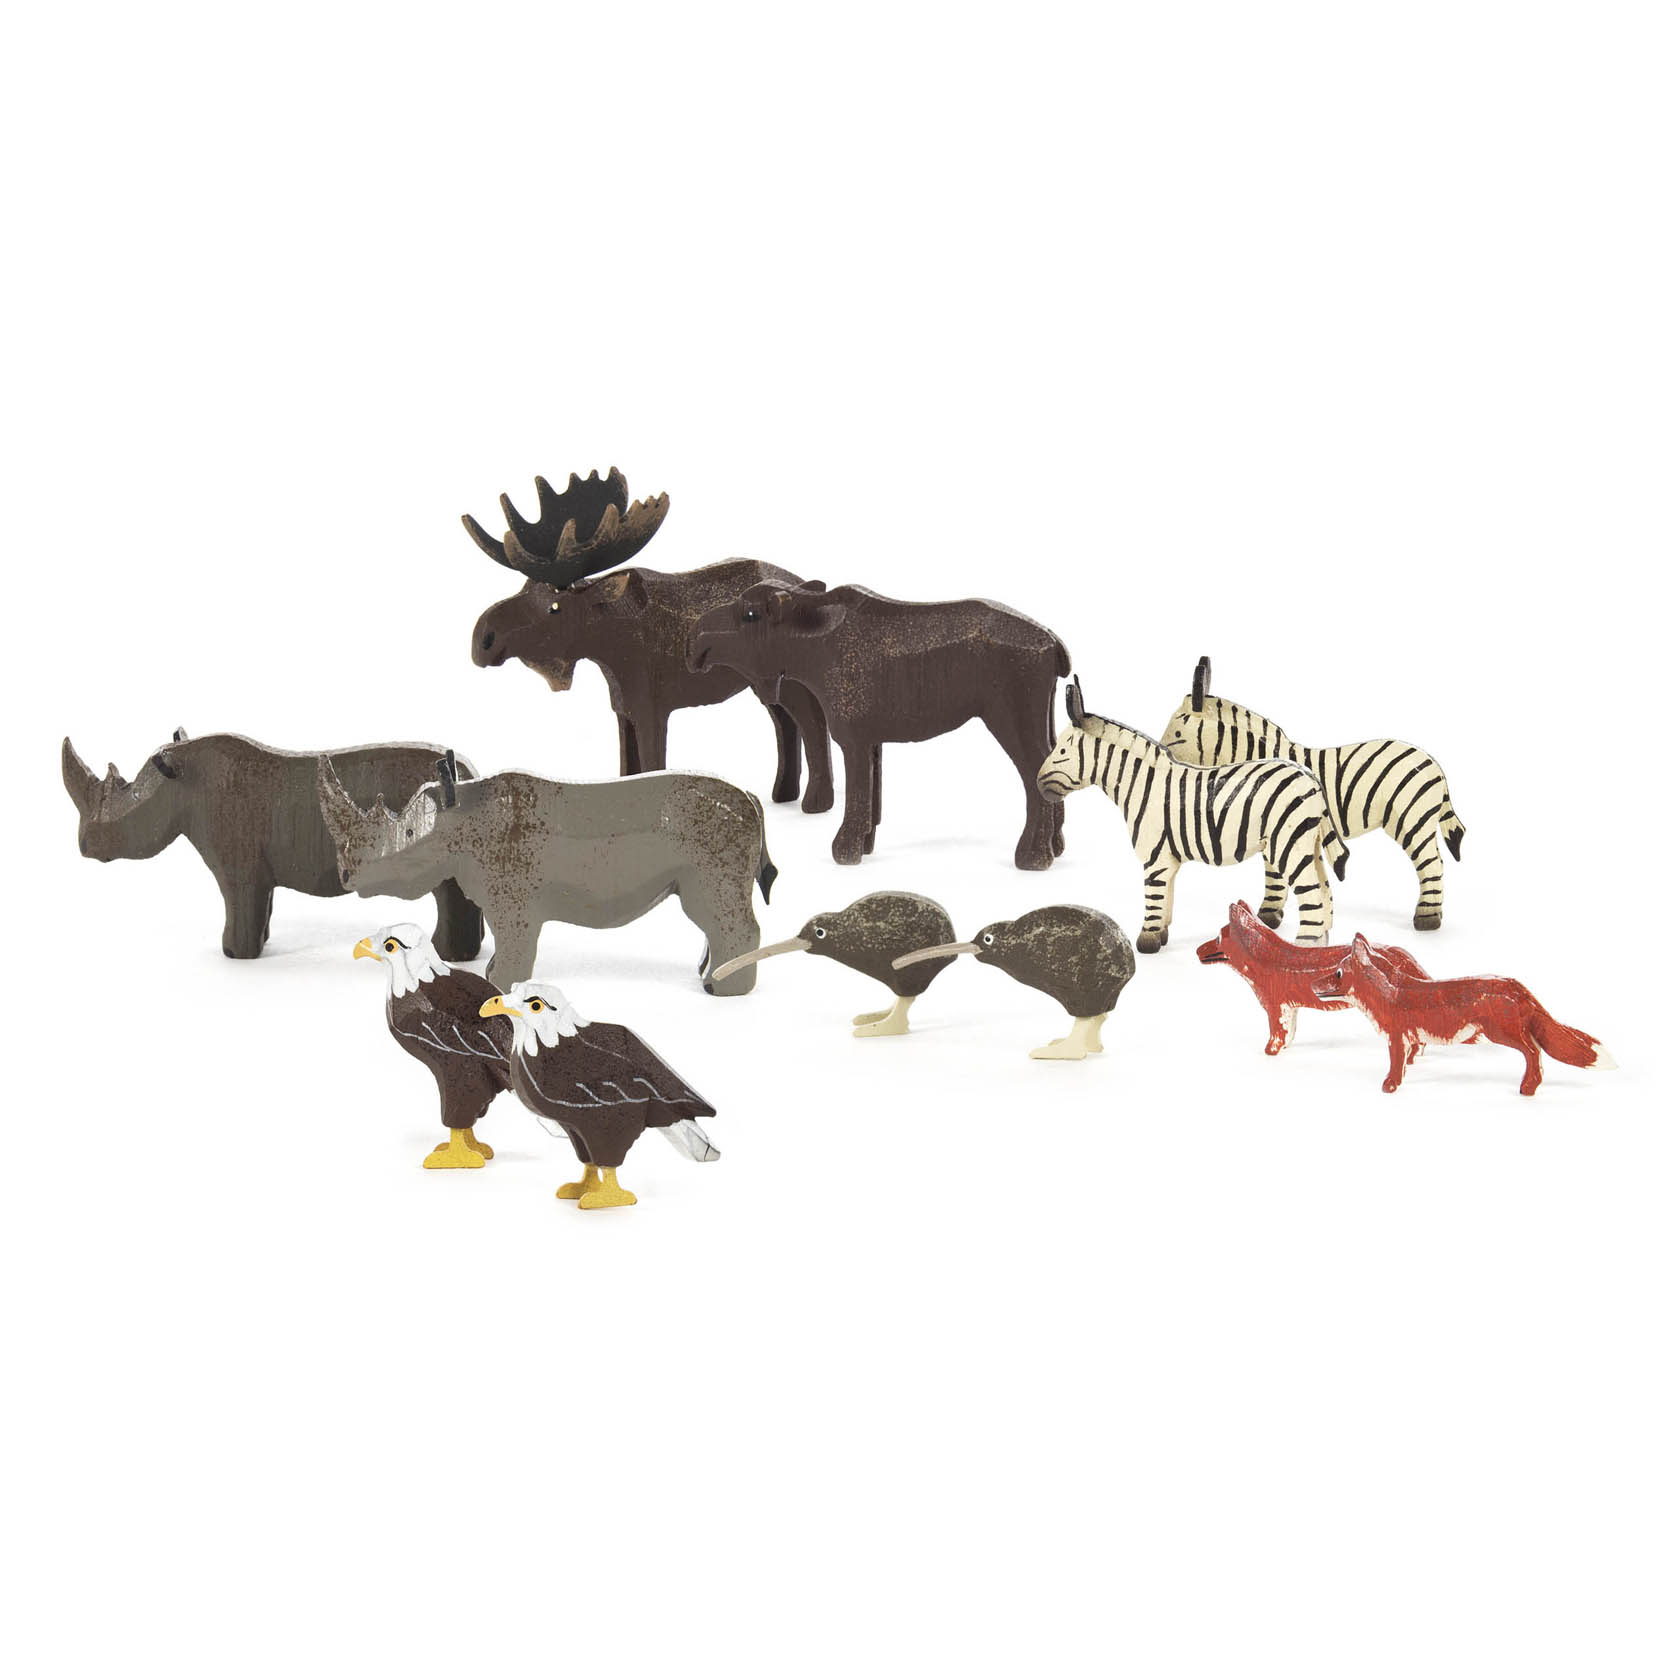 Ergänzung 3 zu Arche Noah (12) Elch, Nashorn, Zebra, Fuchs, Weißkopfseeadler und Kiwi im Dregeno Online Shop günstig kaufen